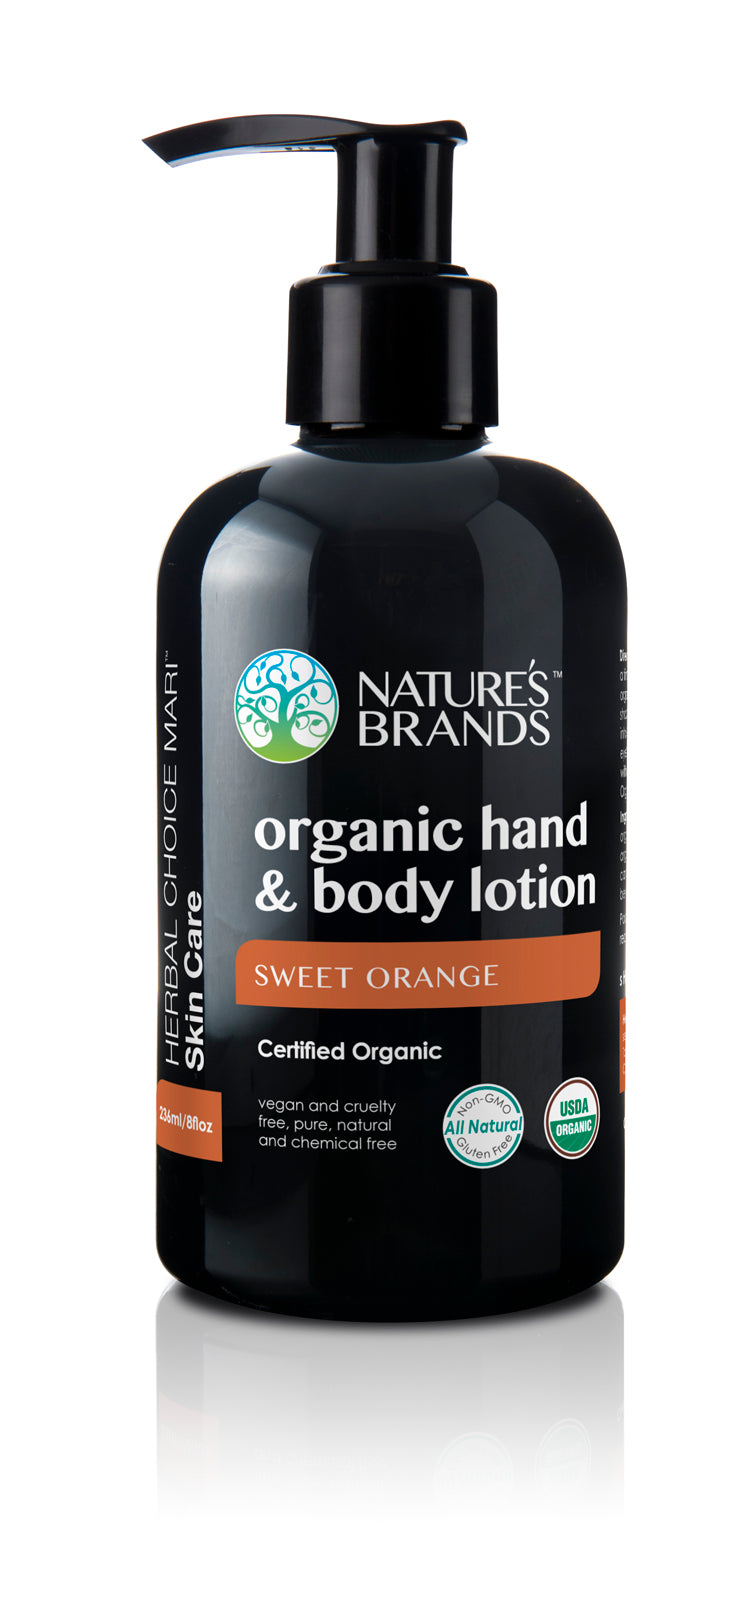 Herbal Choice Mari Organic Hand And Body Lotion, Sweet Orange - Herbal Choice Mari Organic Hand And Body Lotion, Sweet Orange - Herbal Choice Mari Organic Hand And Body Lotion, Sweet Orange